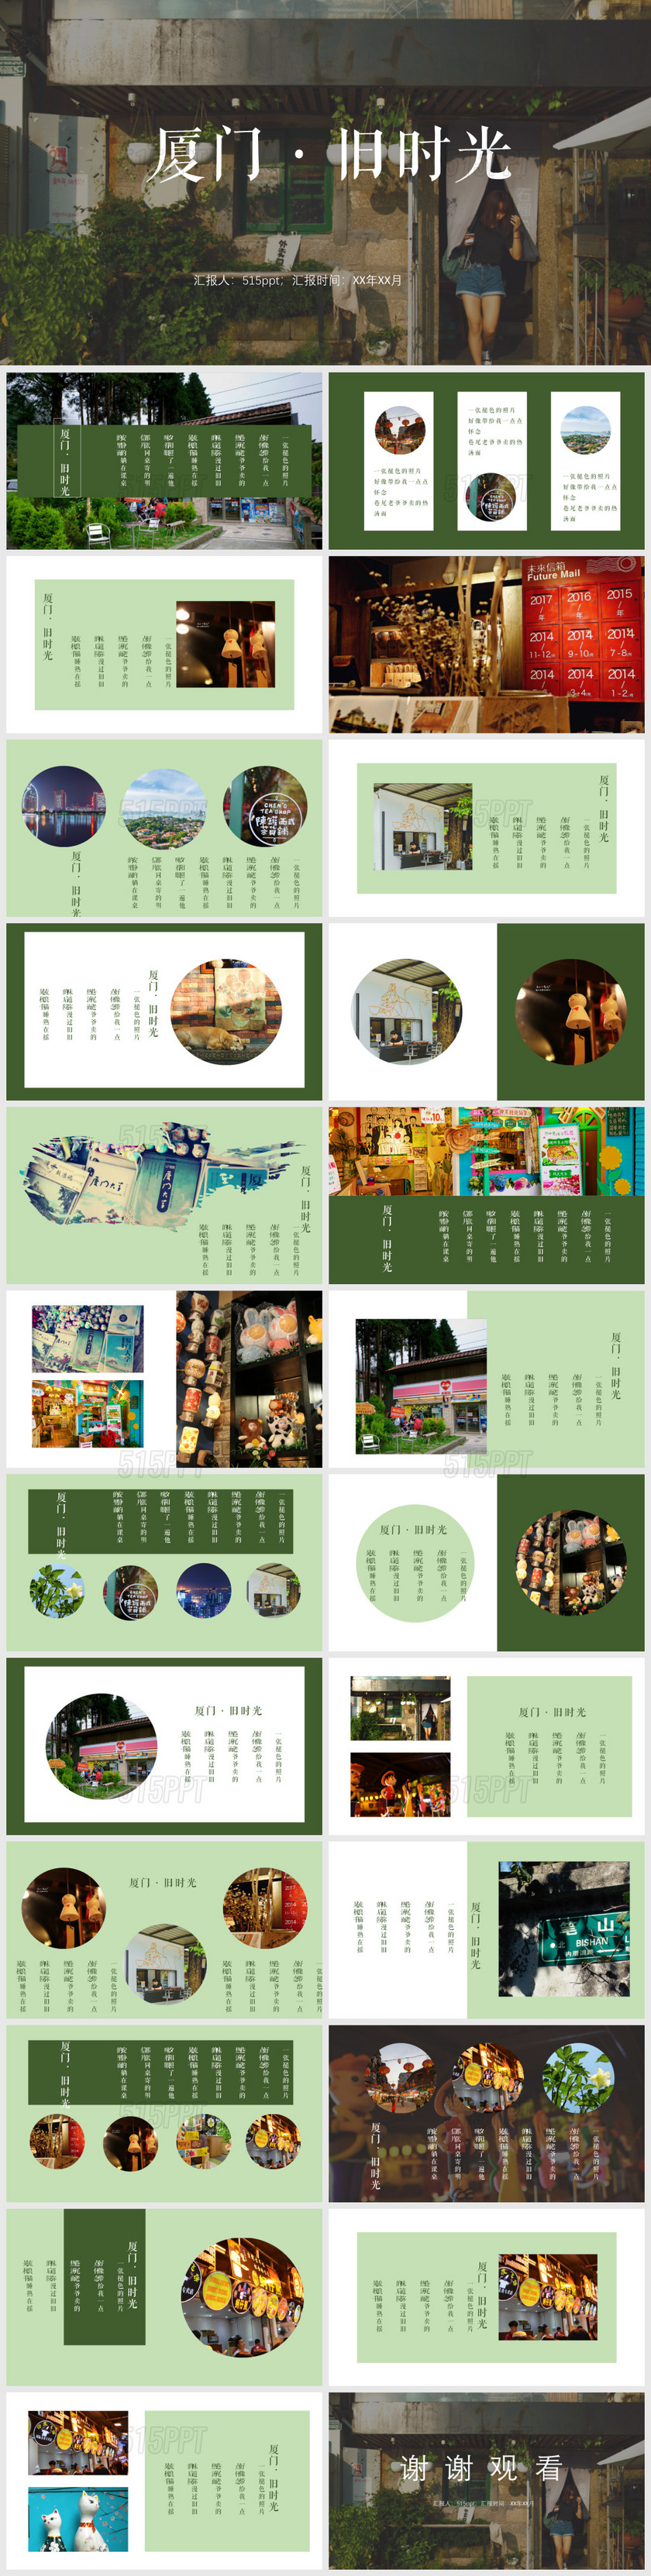 清新绿色文艺厦门旅游相册宣传PPT模板旅游宣传一